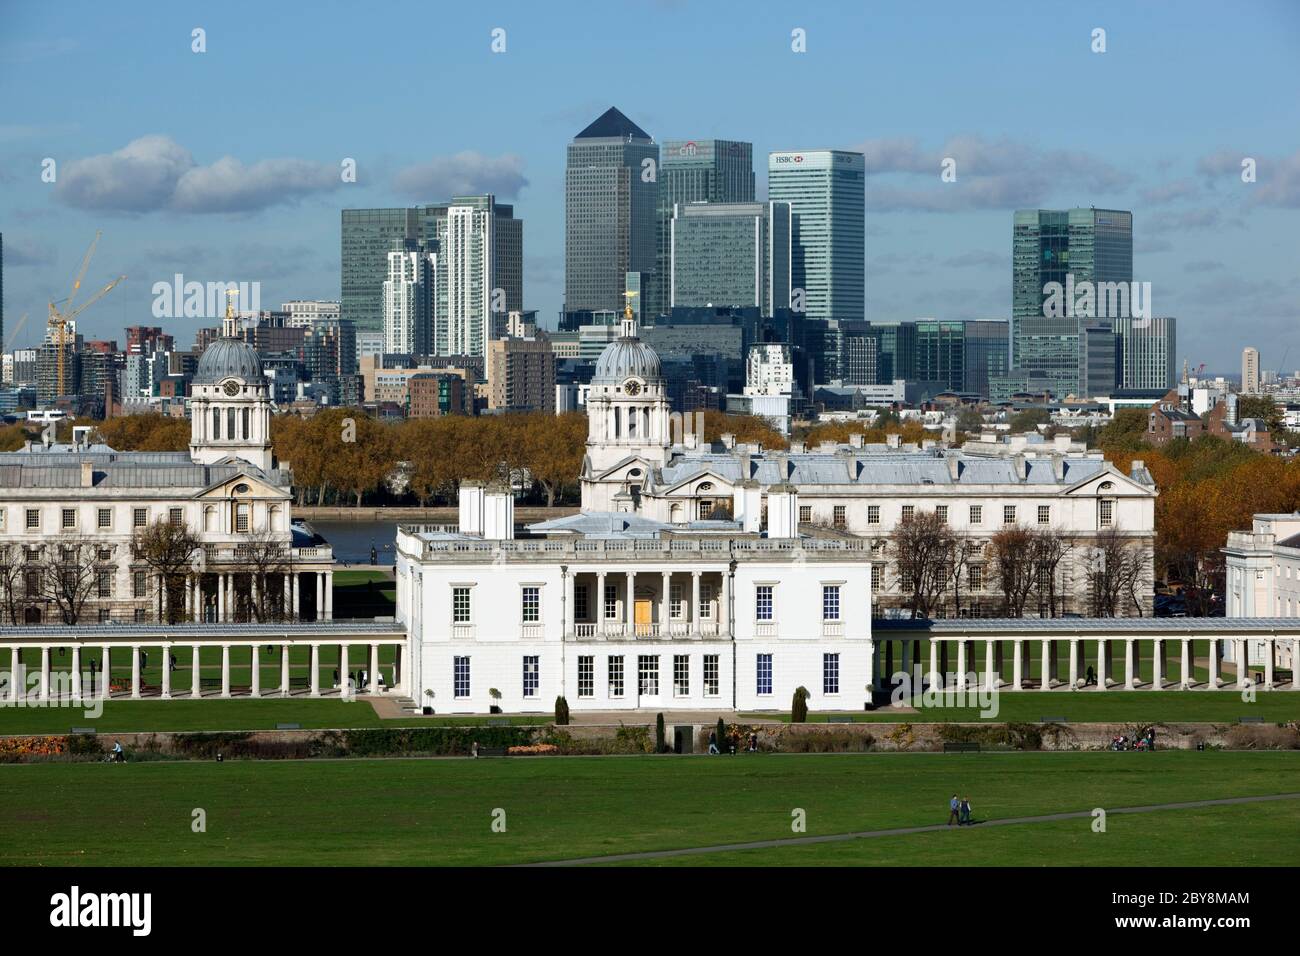 Angleterre - Londres - Greenwich - vue de Greenwich Park en automne au Royal Naval College, Queen's House et les tours de Canary Wharf Banque D'Images